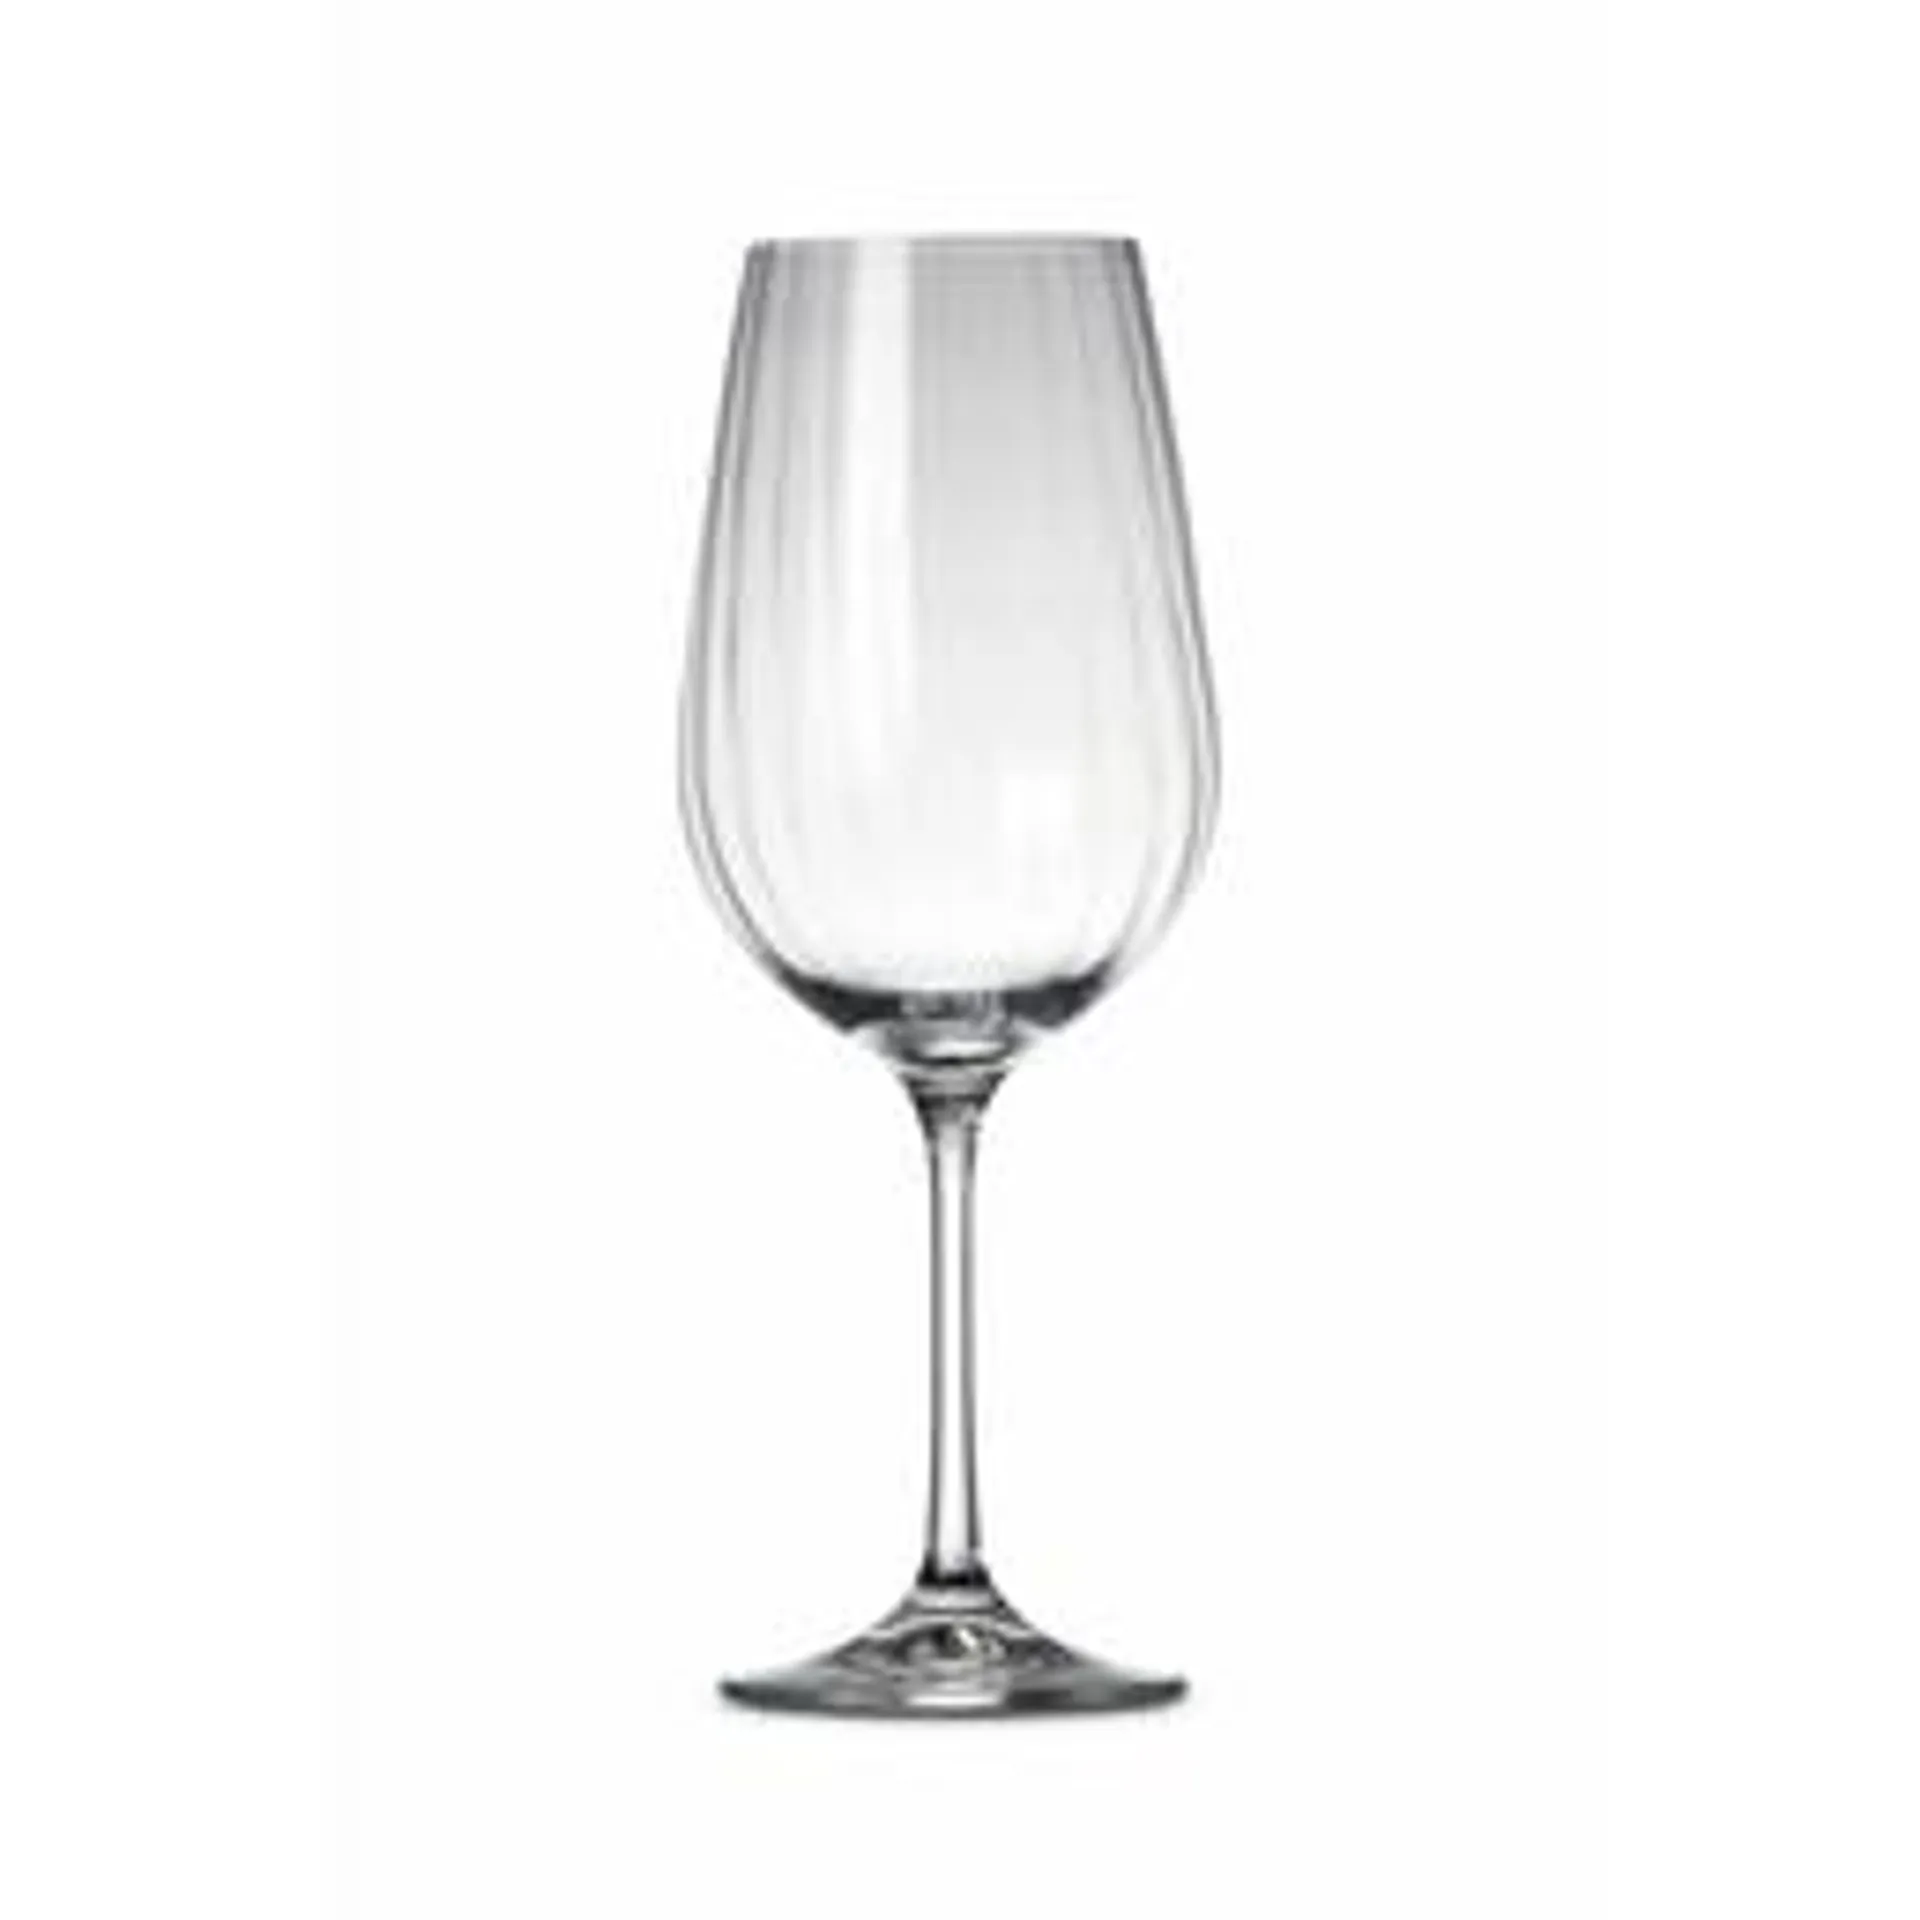 Fine 2 Dine Optic Red Wine Glass, 550ml